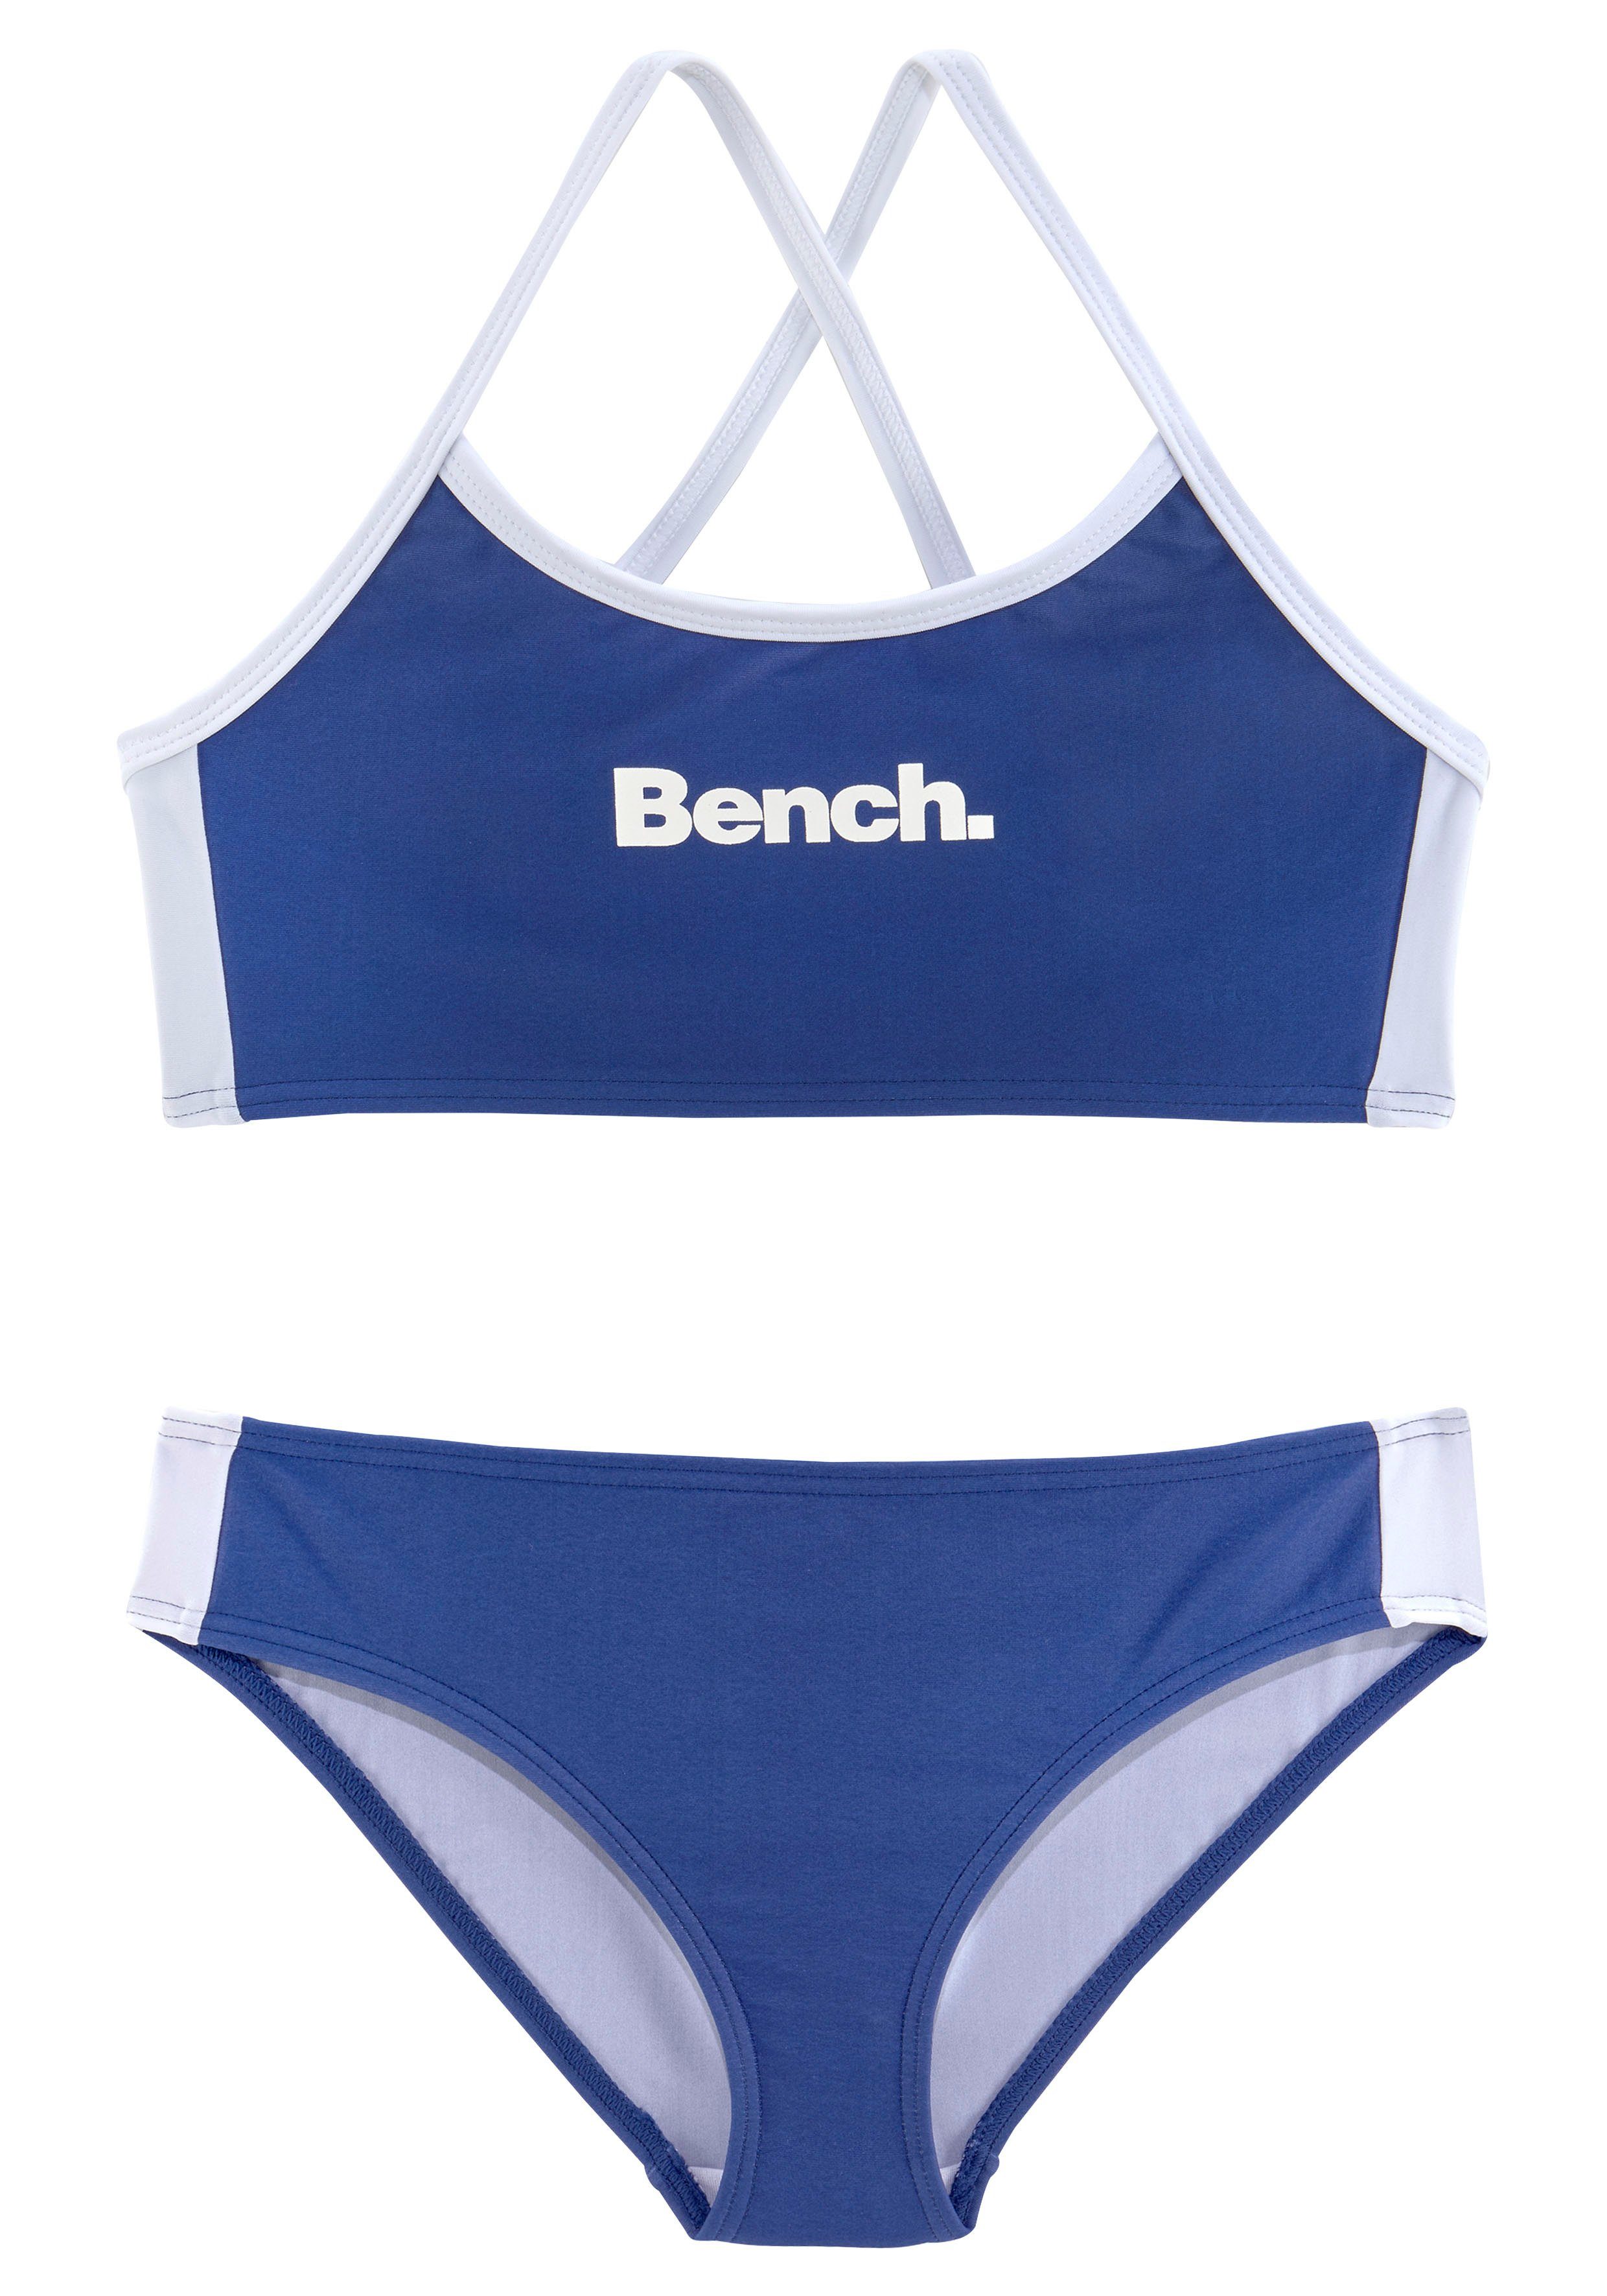 Bench. Bustier-Bikini blau-weiß mit Trägern gekreuzten